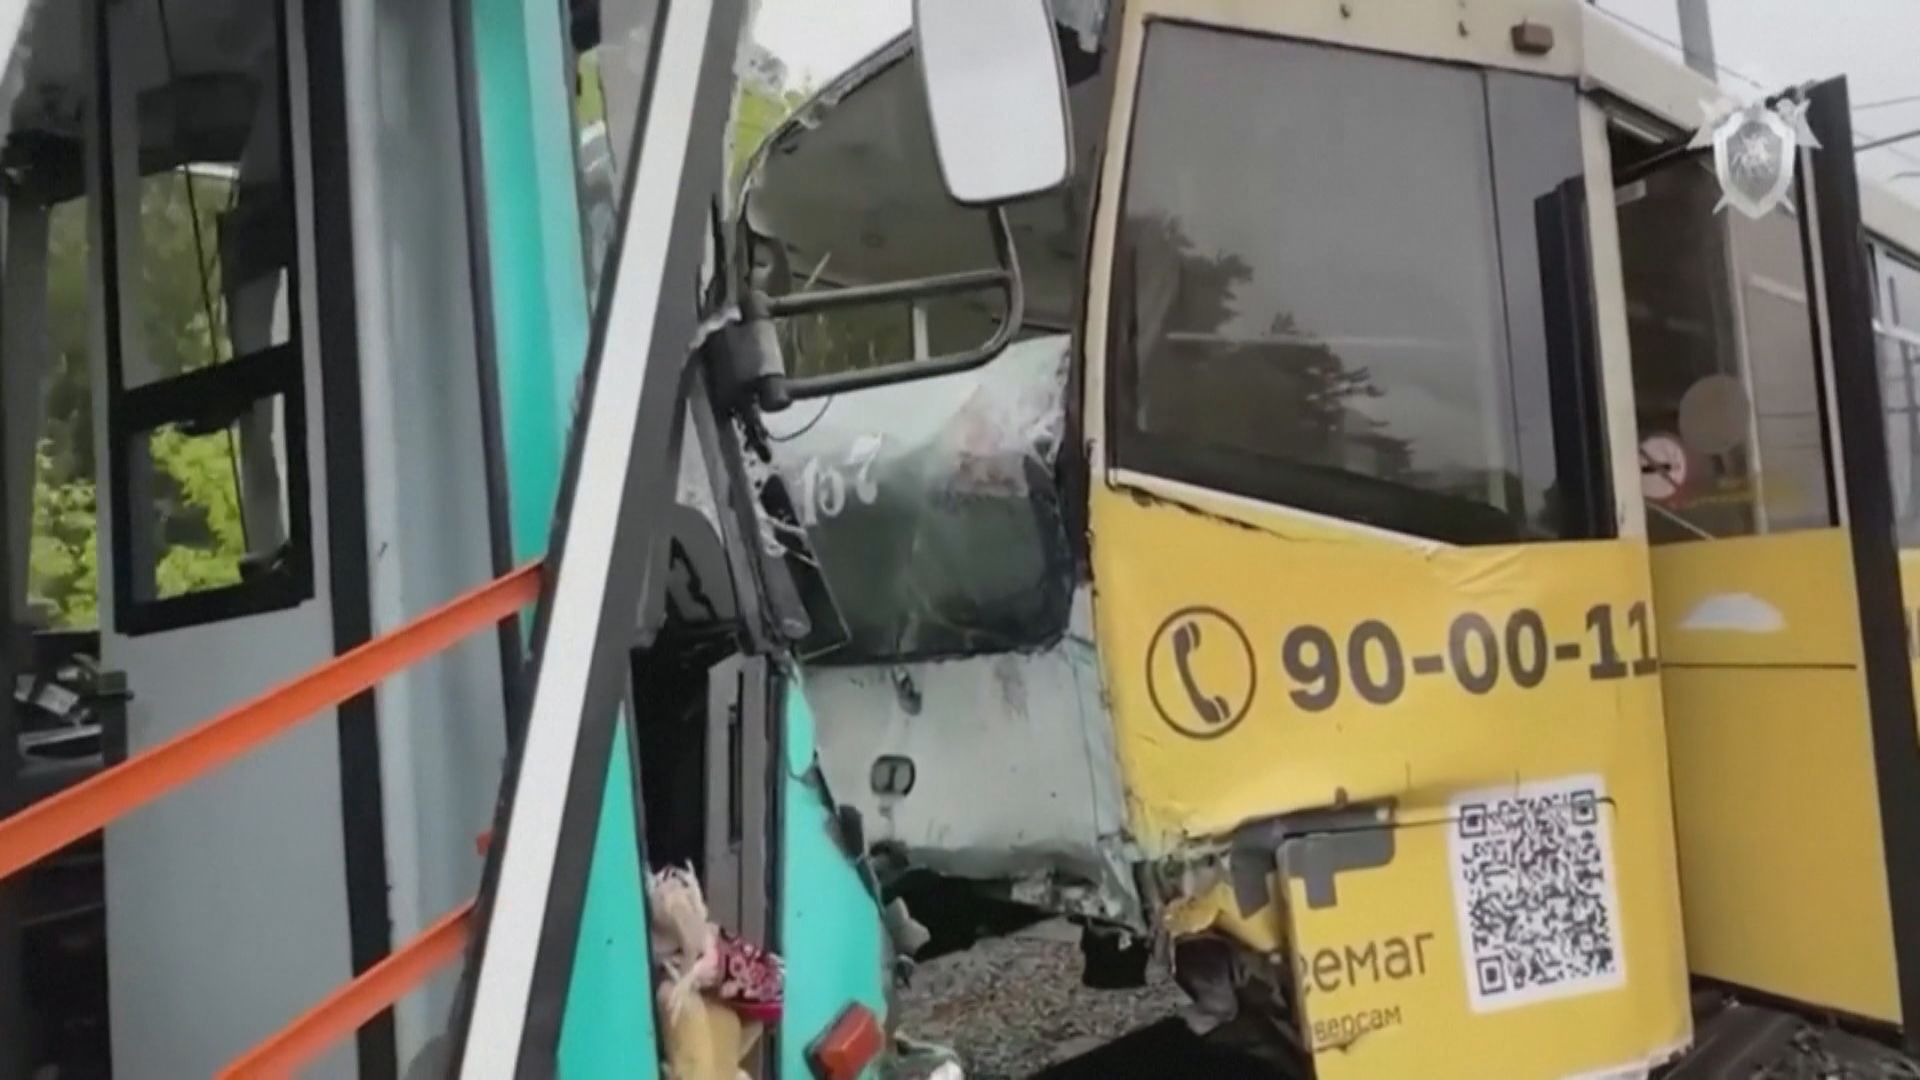 俄羅斯電車相撞 至少一死過百傷